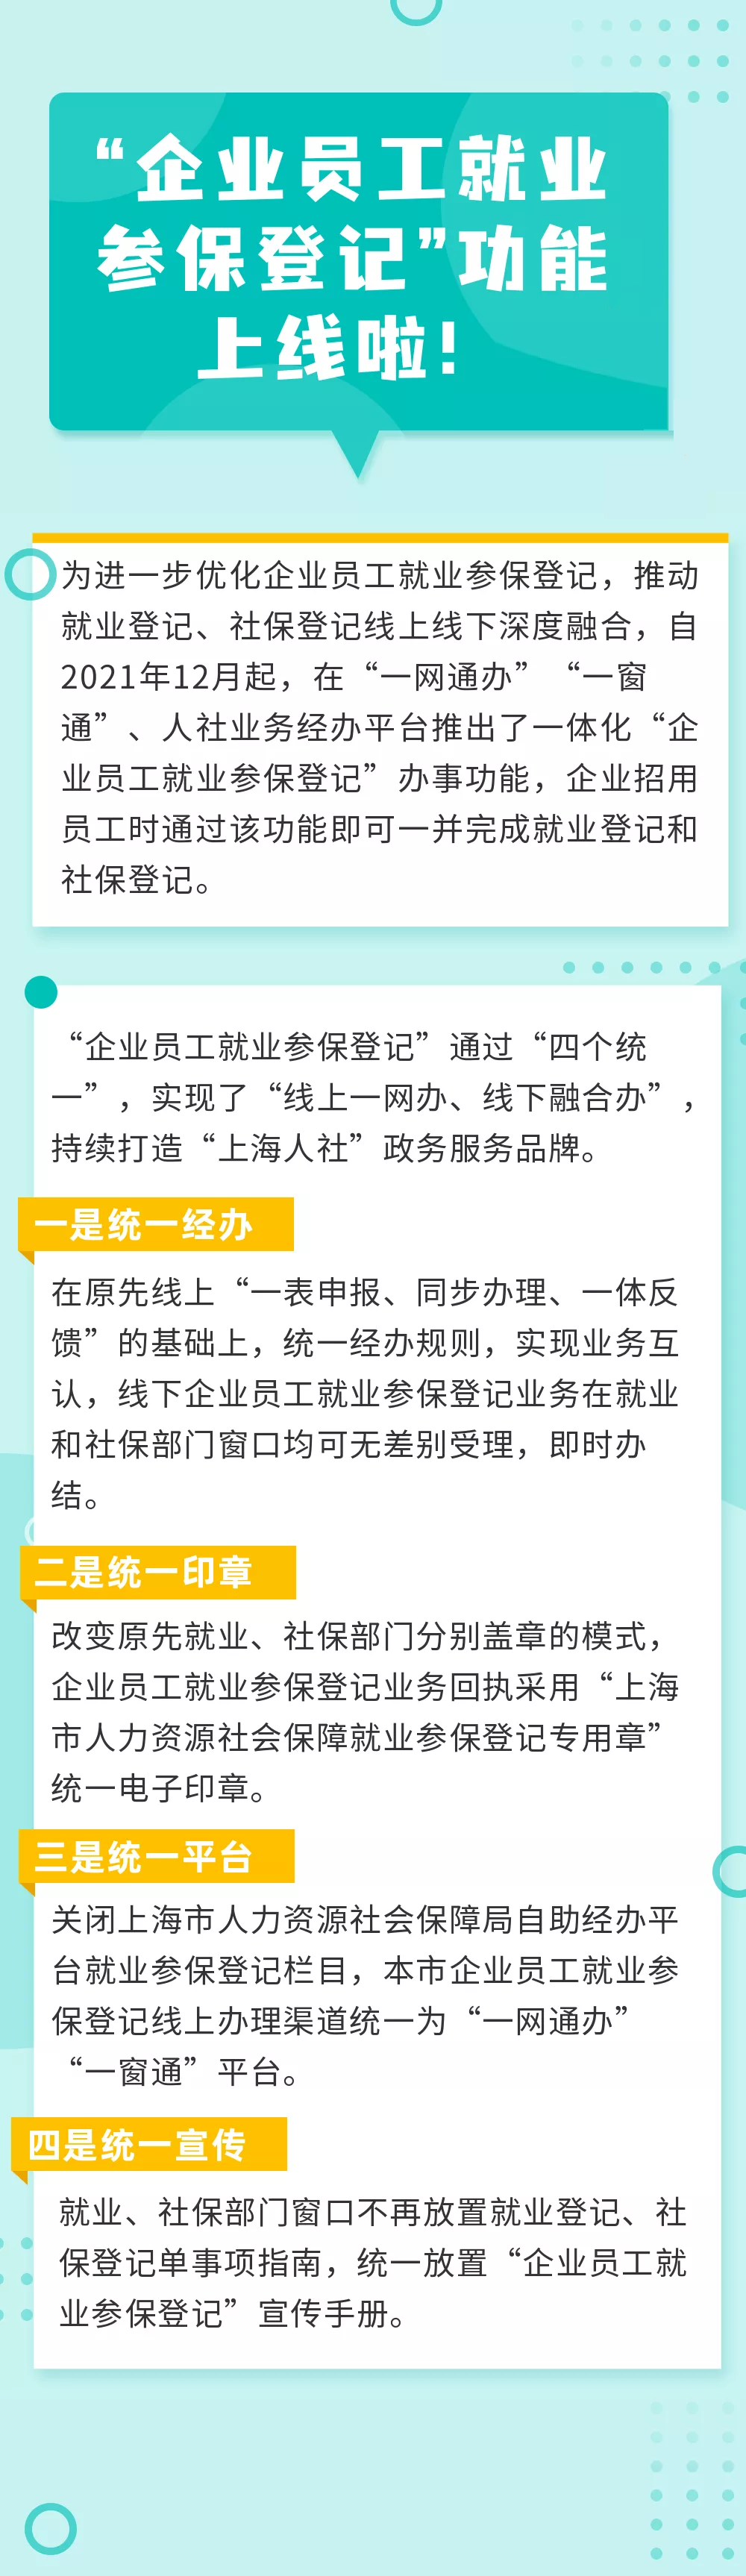 上海市城镇社会保险,上海市城镇社会保险基数